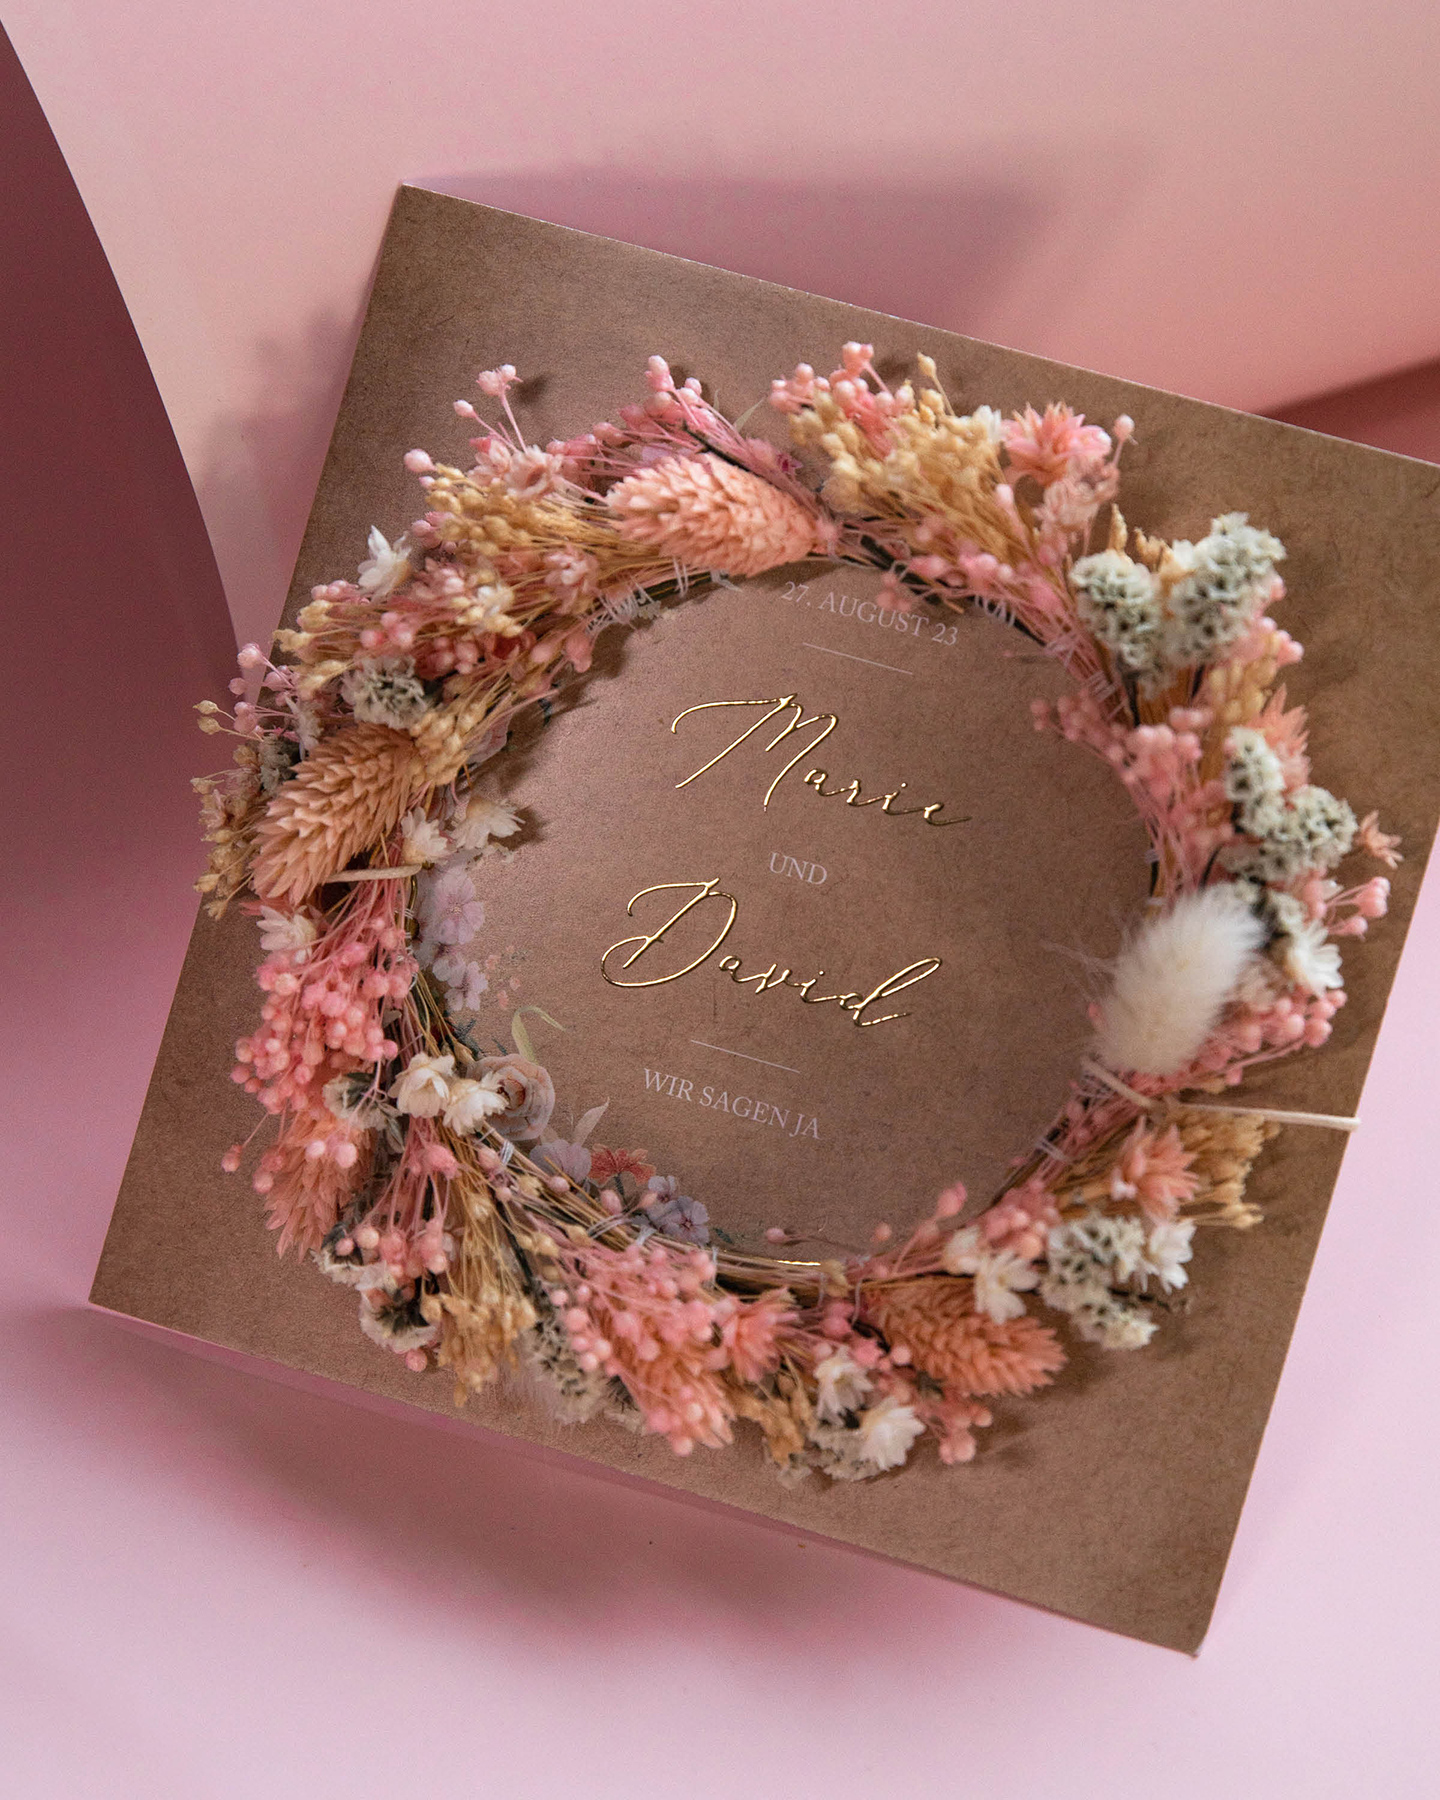 DIY Hochzeitseinladung mit selbst gemachtem Trockenblumenkranz in rosa